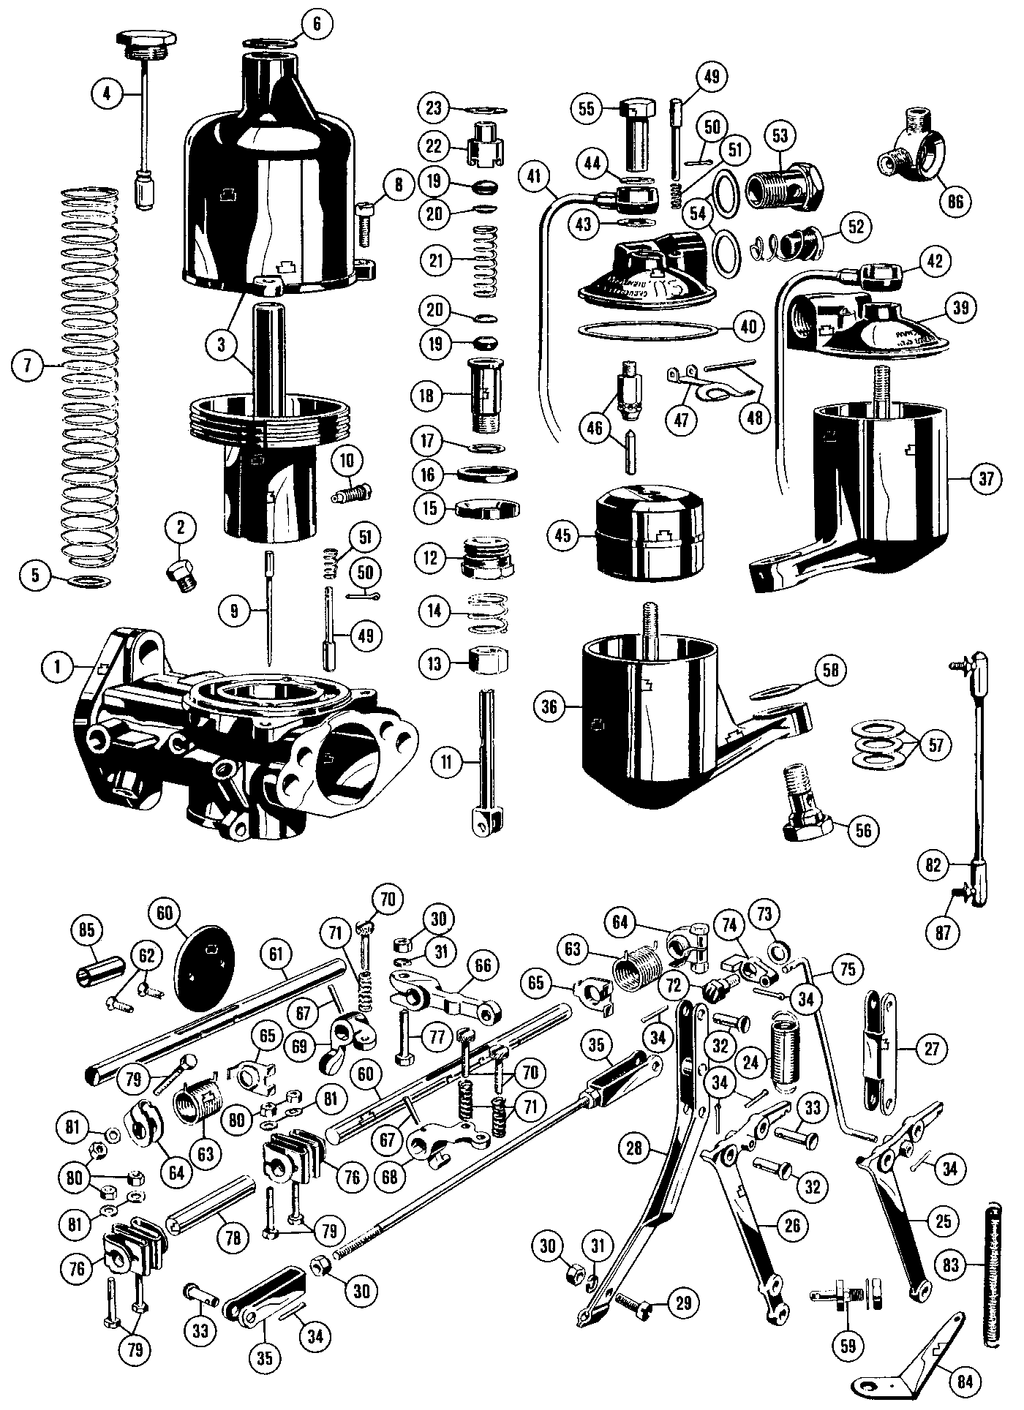 MGTD-TF 1949-1955 - Chokes | Webshop Anglo Parts - 1